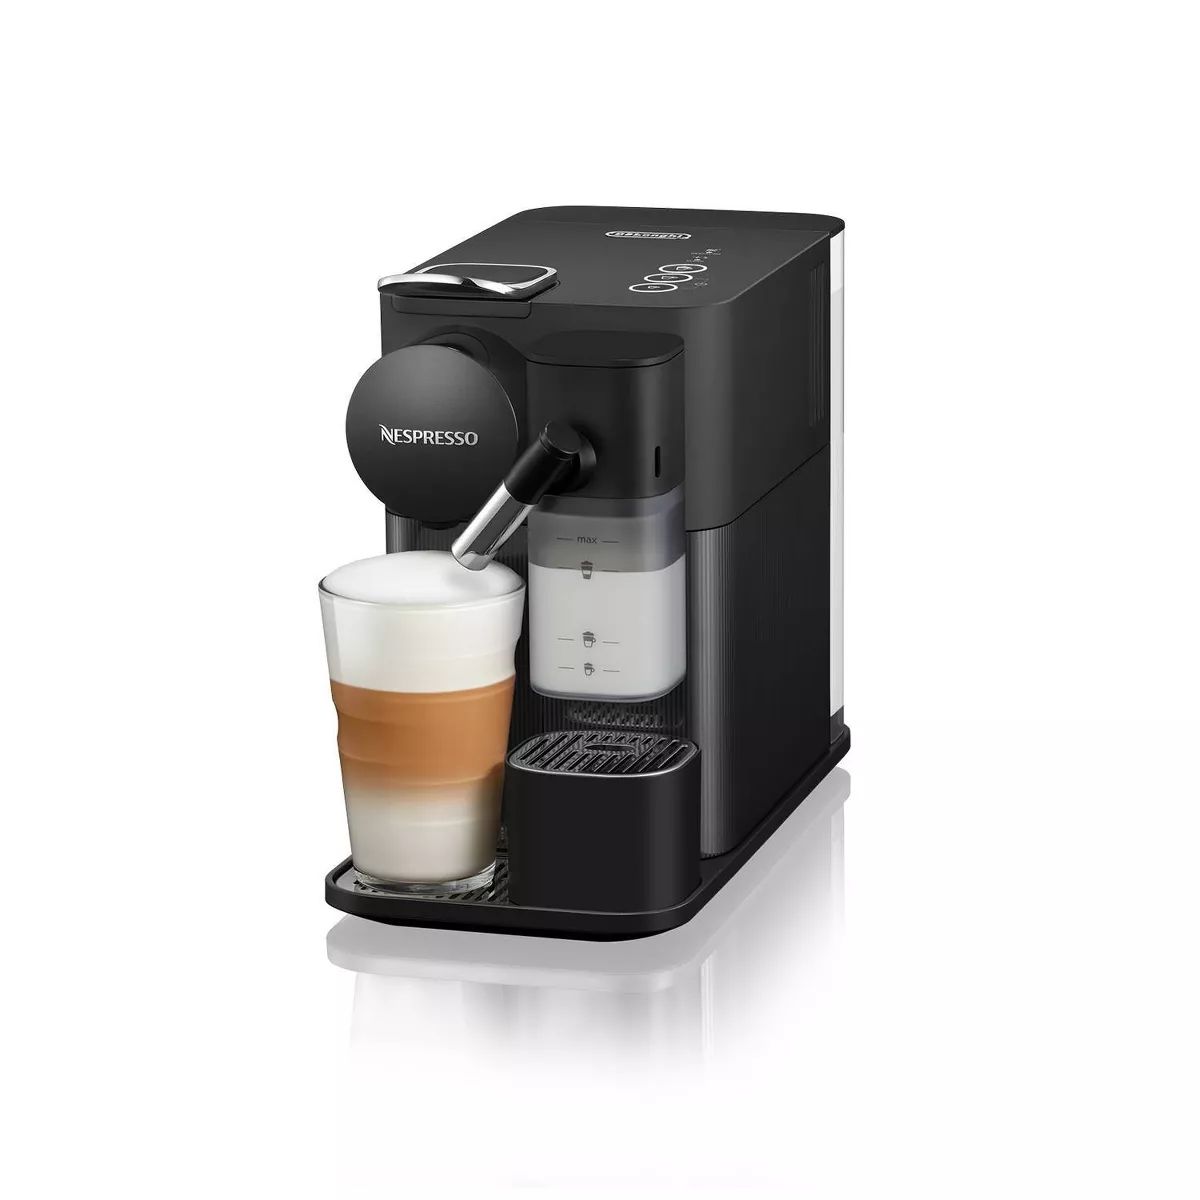 Nespresso Lattissima One Coffee Maker and Espresso Machine by DeLonghi - Black | Target